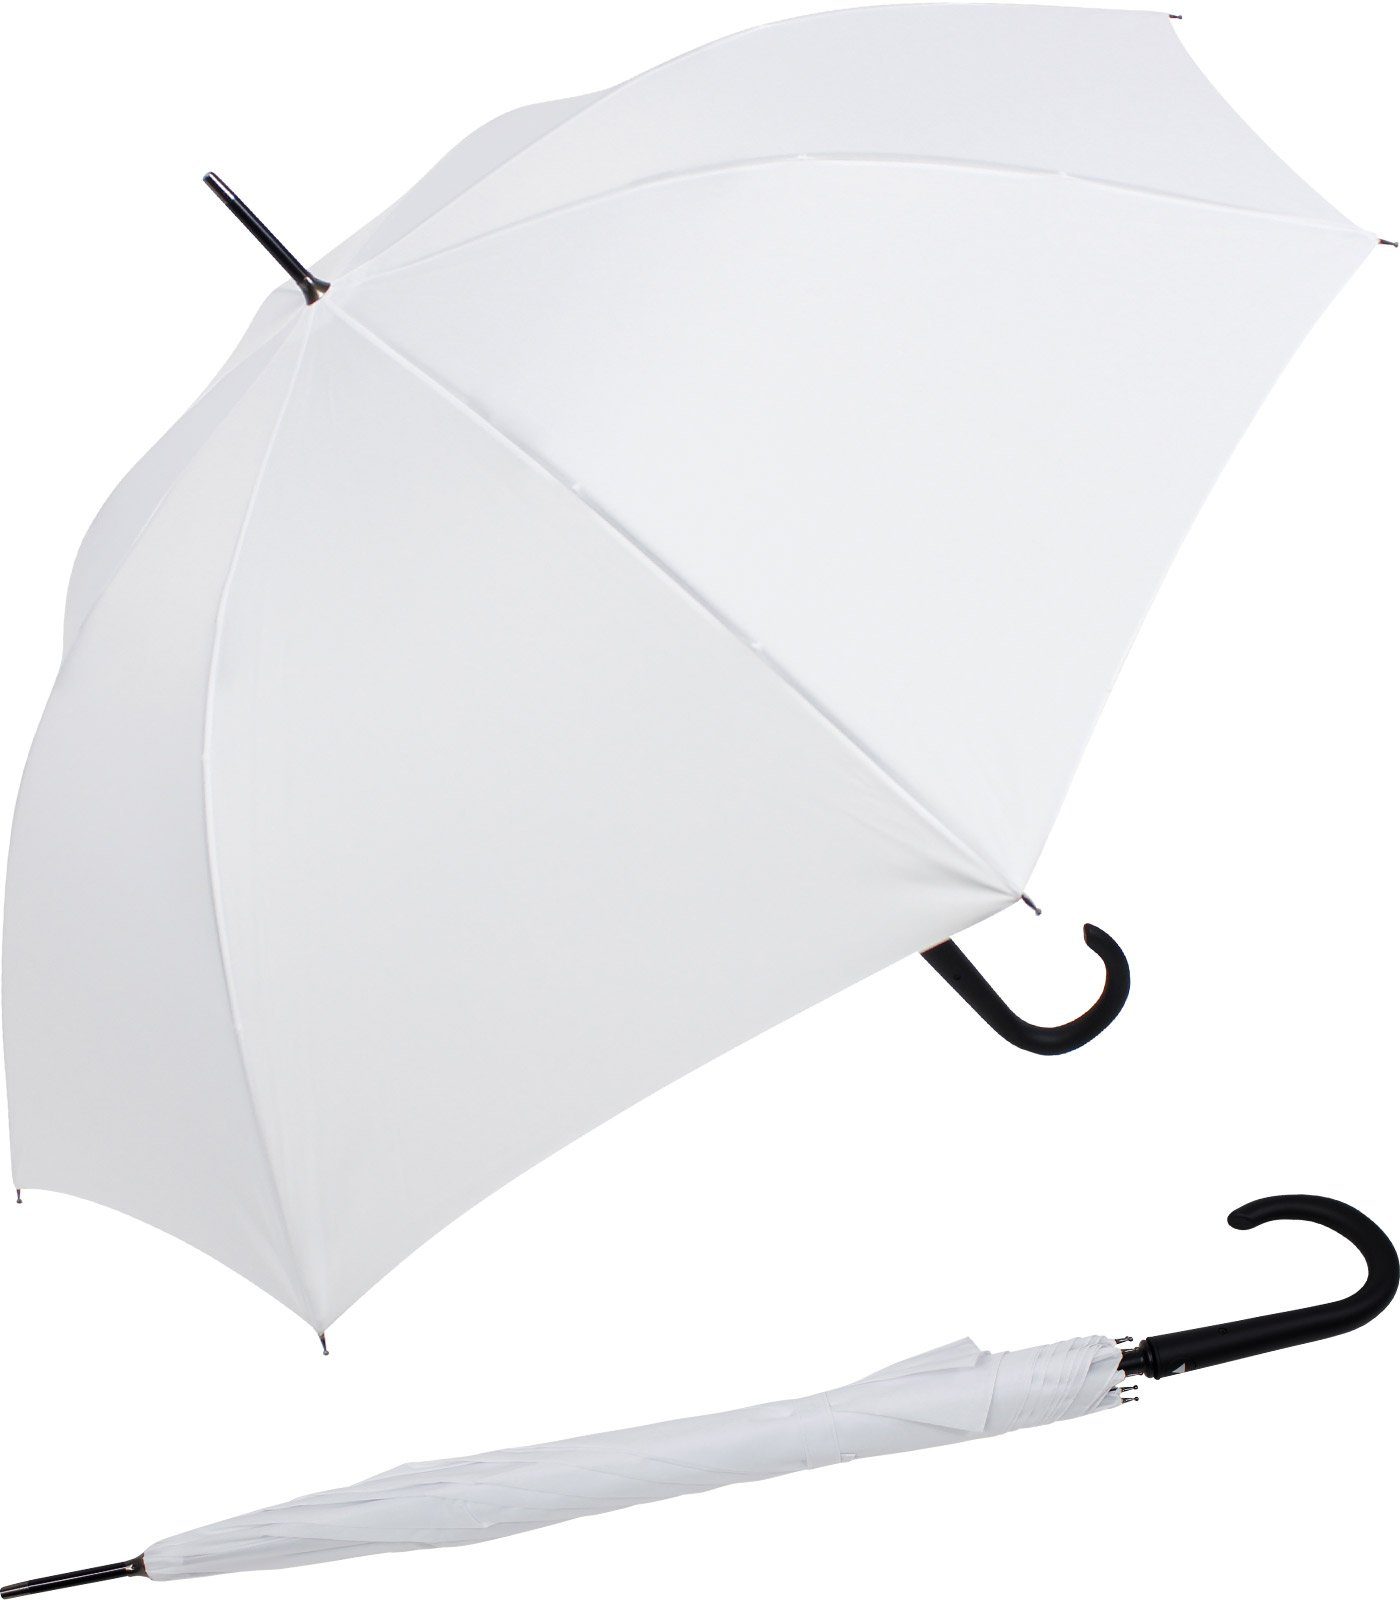 RS-Versand Langregenschirm großer stabiler Regenschirm mit Auf-Automatik, Stahl-Fiberglas-Gestell, integrierter Auslöseknopf weiß | Stockschirme